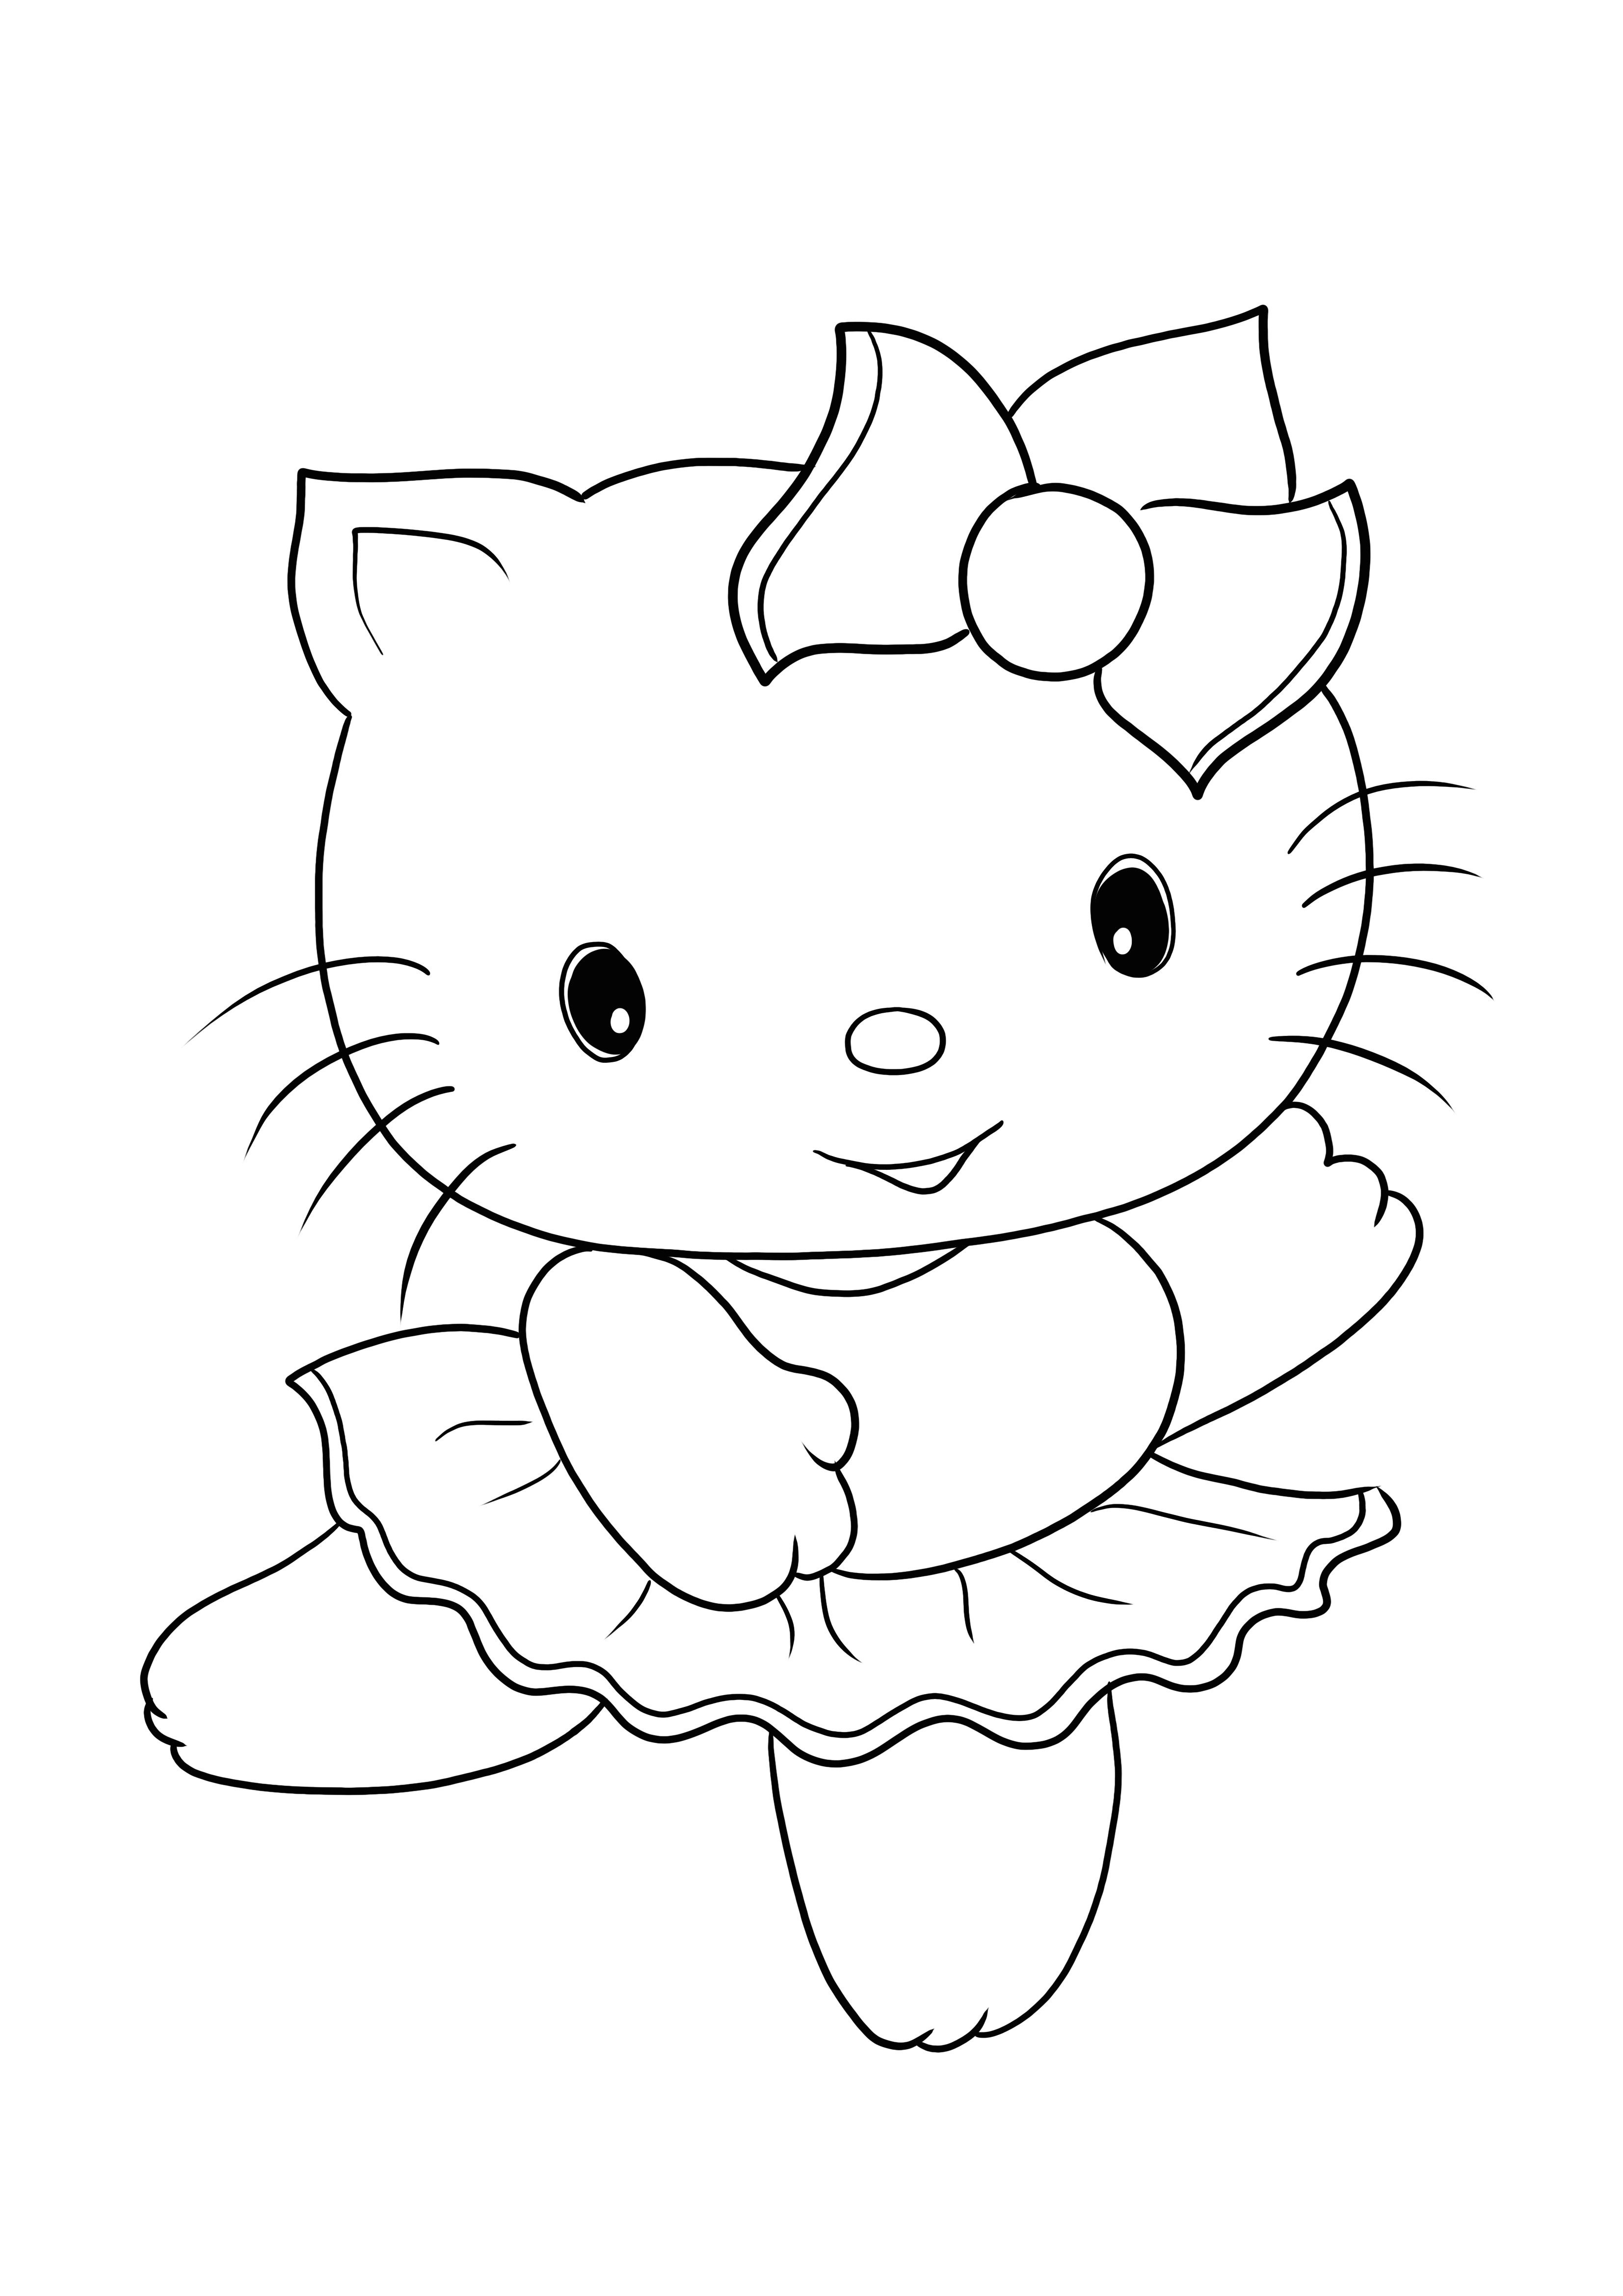 Gratis printen en kleuren van schattige Hello Kitty-afbeelding voor alle leeftijden kleurplaat